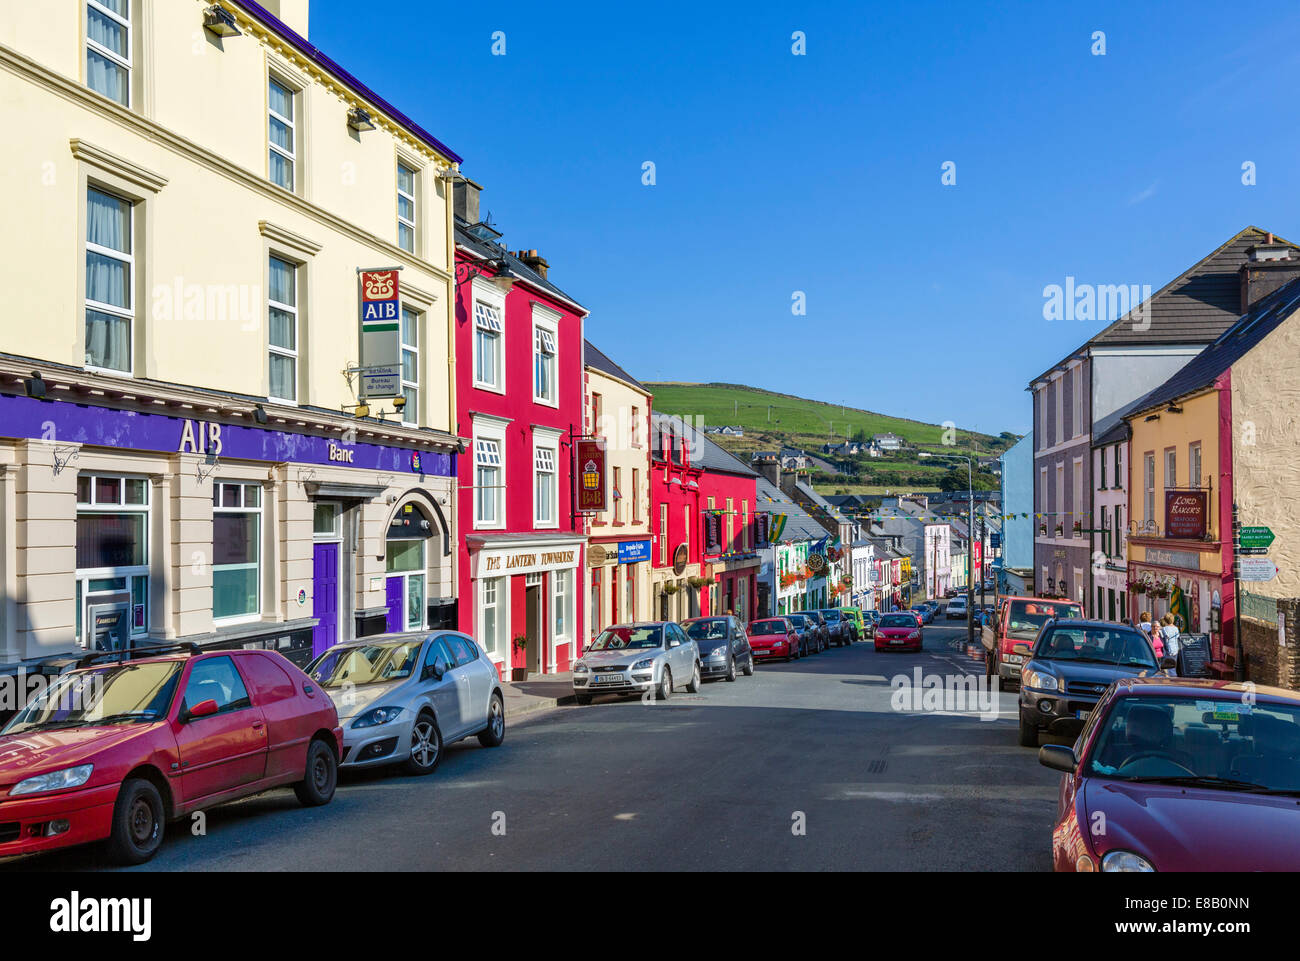 Main Street, Dingle, Dingle Peninsula, County Kerry, Republic of Ireland Stock Photo